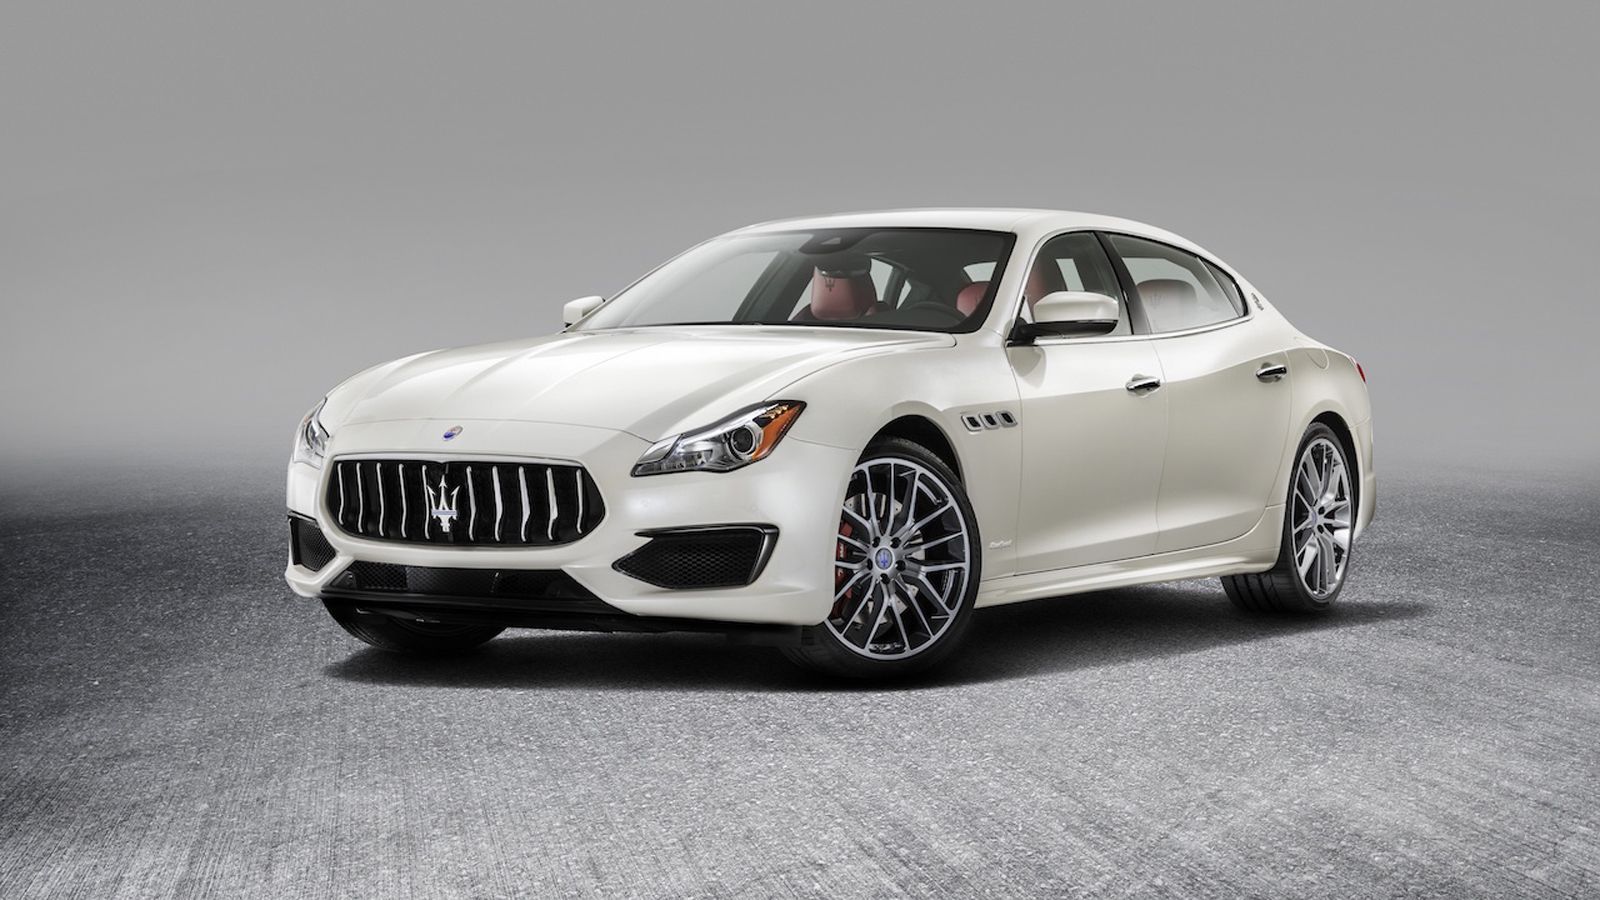 Η επόμενη γενιά της Maserati Quattroporte «ηλεκτρίζεται»